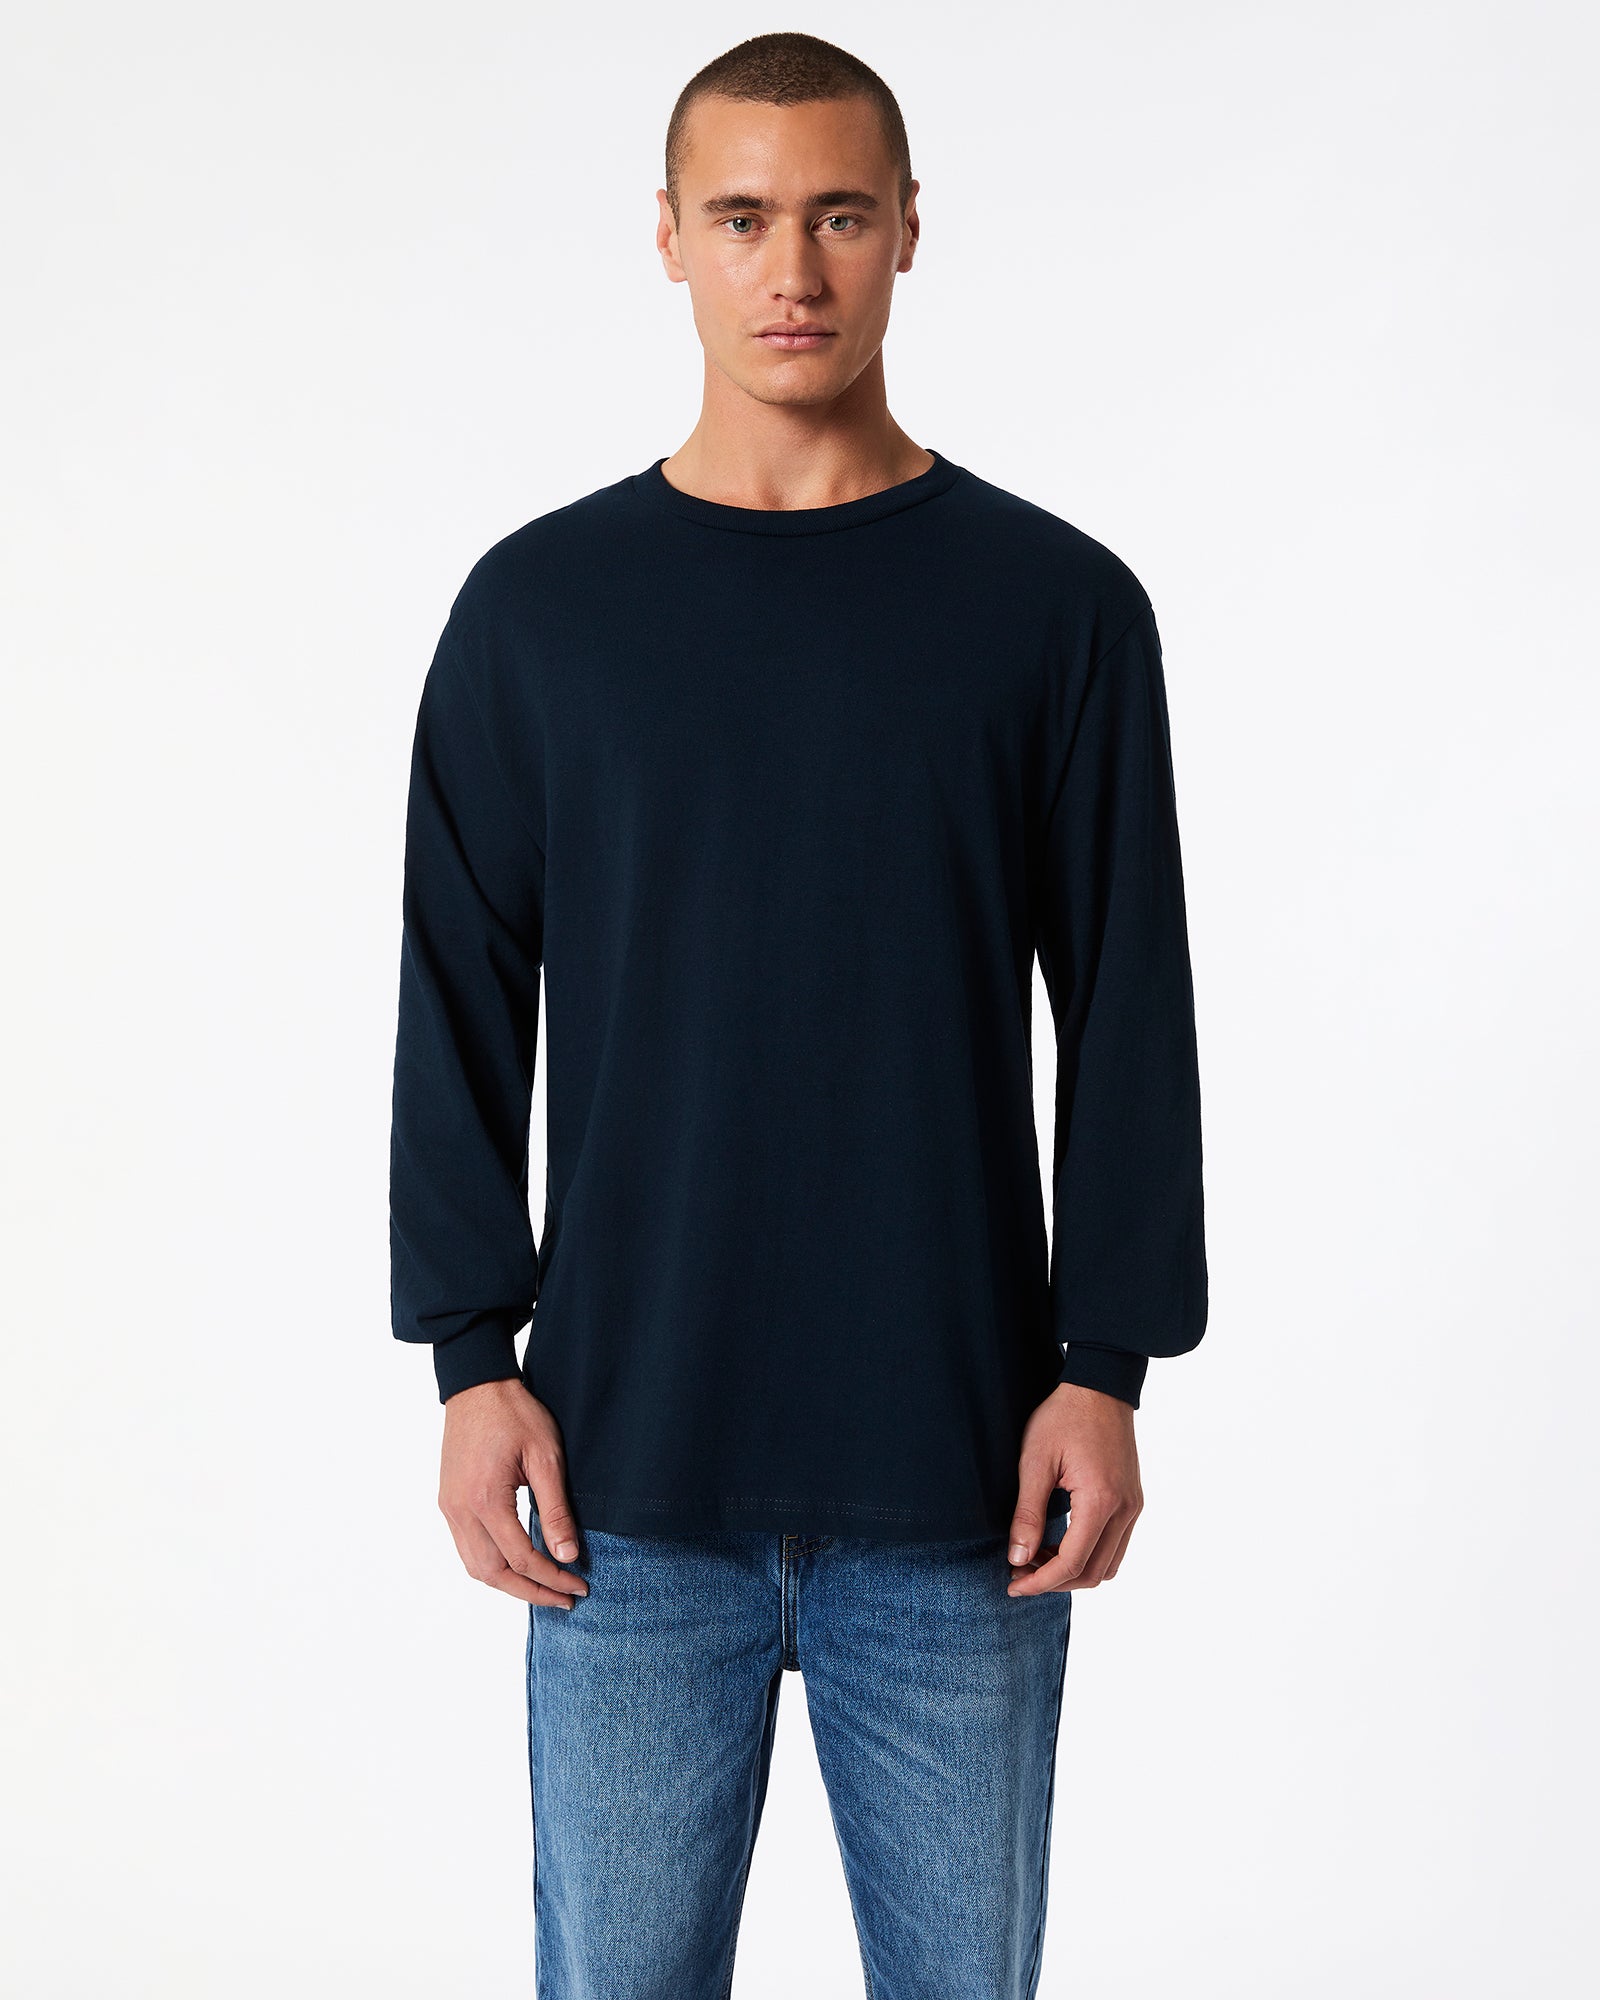 Heavyweight Unisex Long Sleeve T-Shirt - True Navy